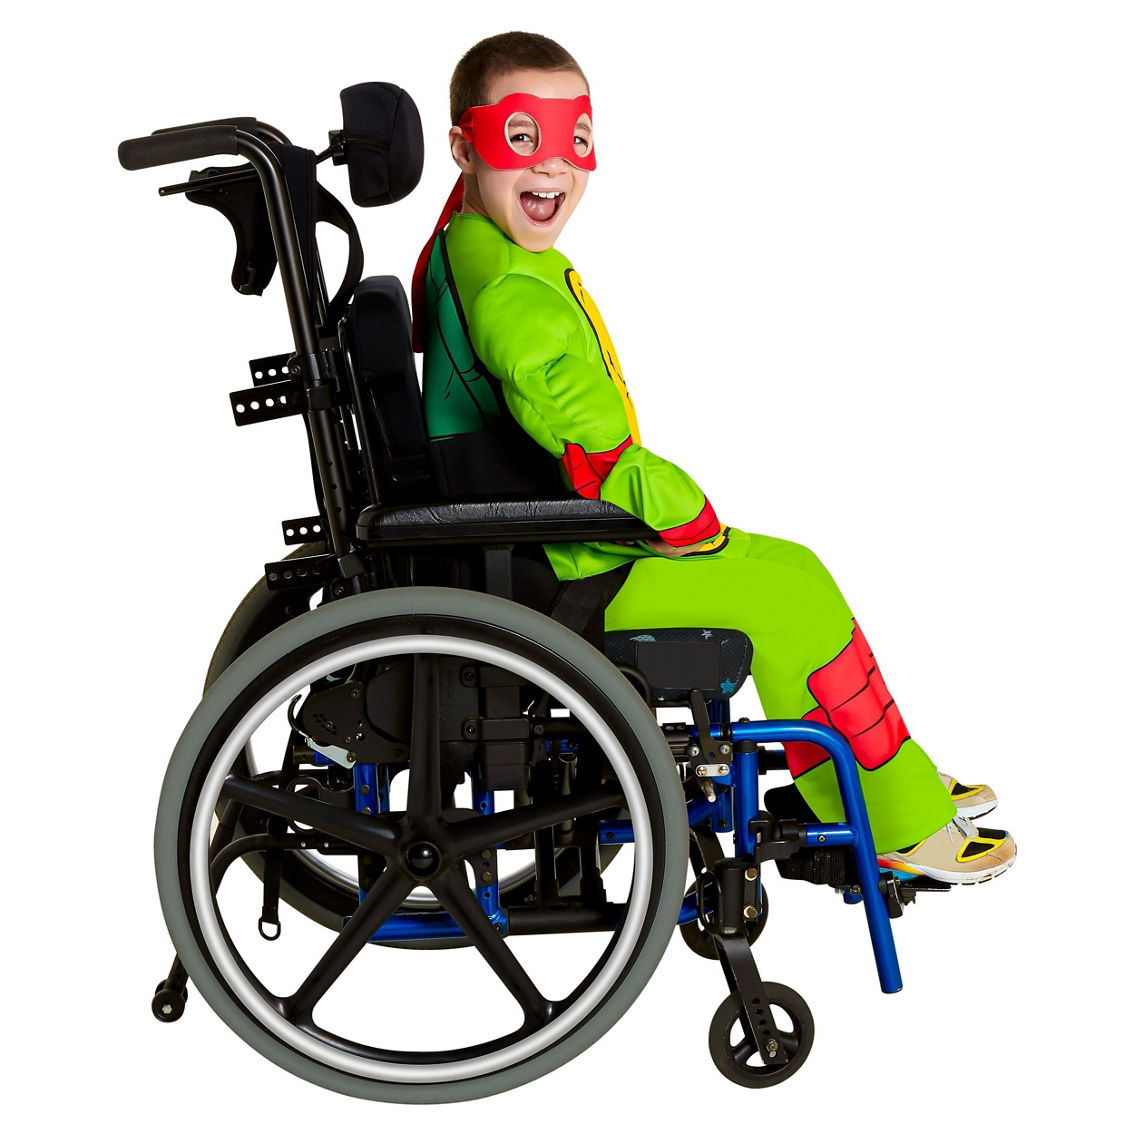 Teenage Mutant Ninja Turtles Raphael Adaptive Costume - Image 2 of 4